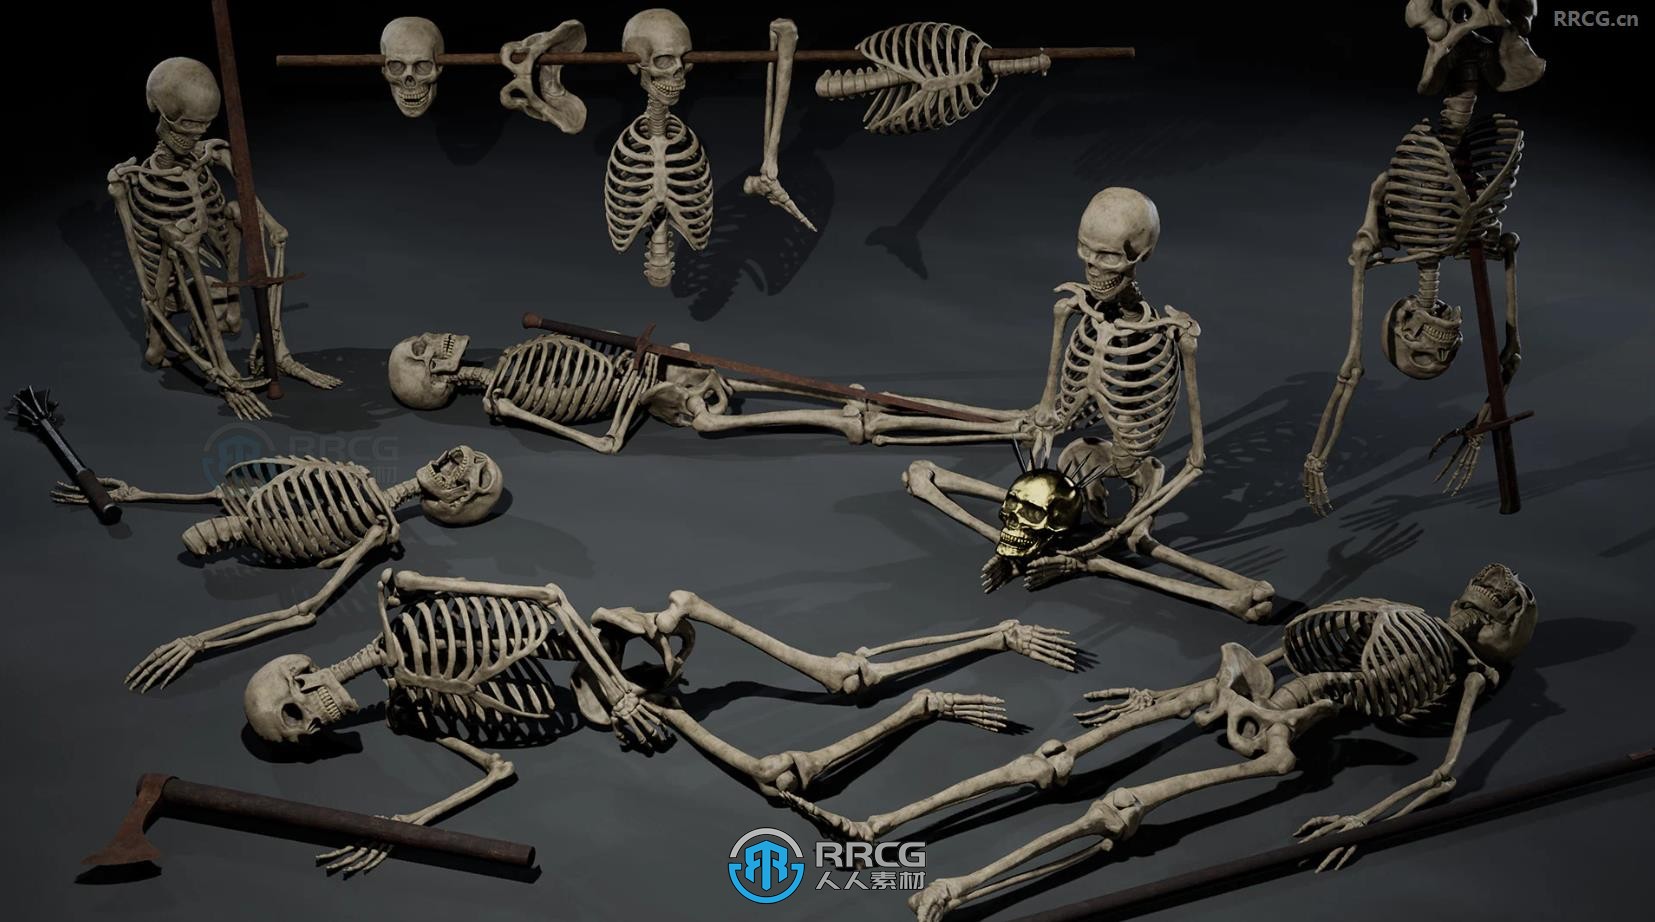 46组骷髅骨头与20组武器装备道具模型UE游戏素材